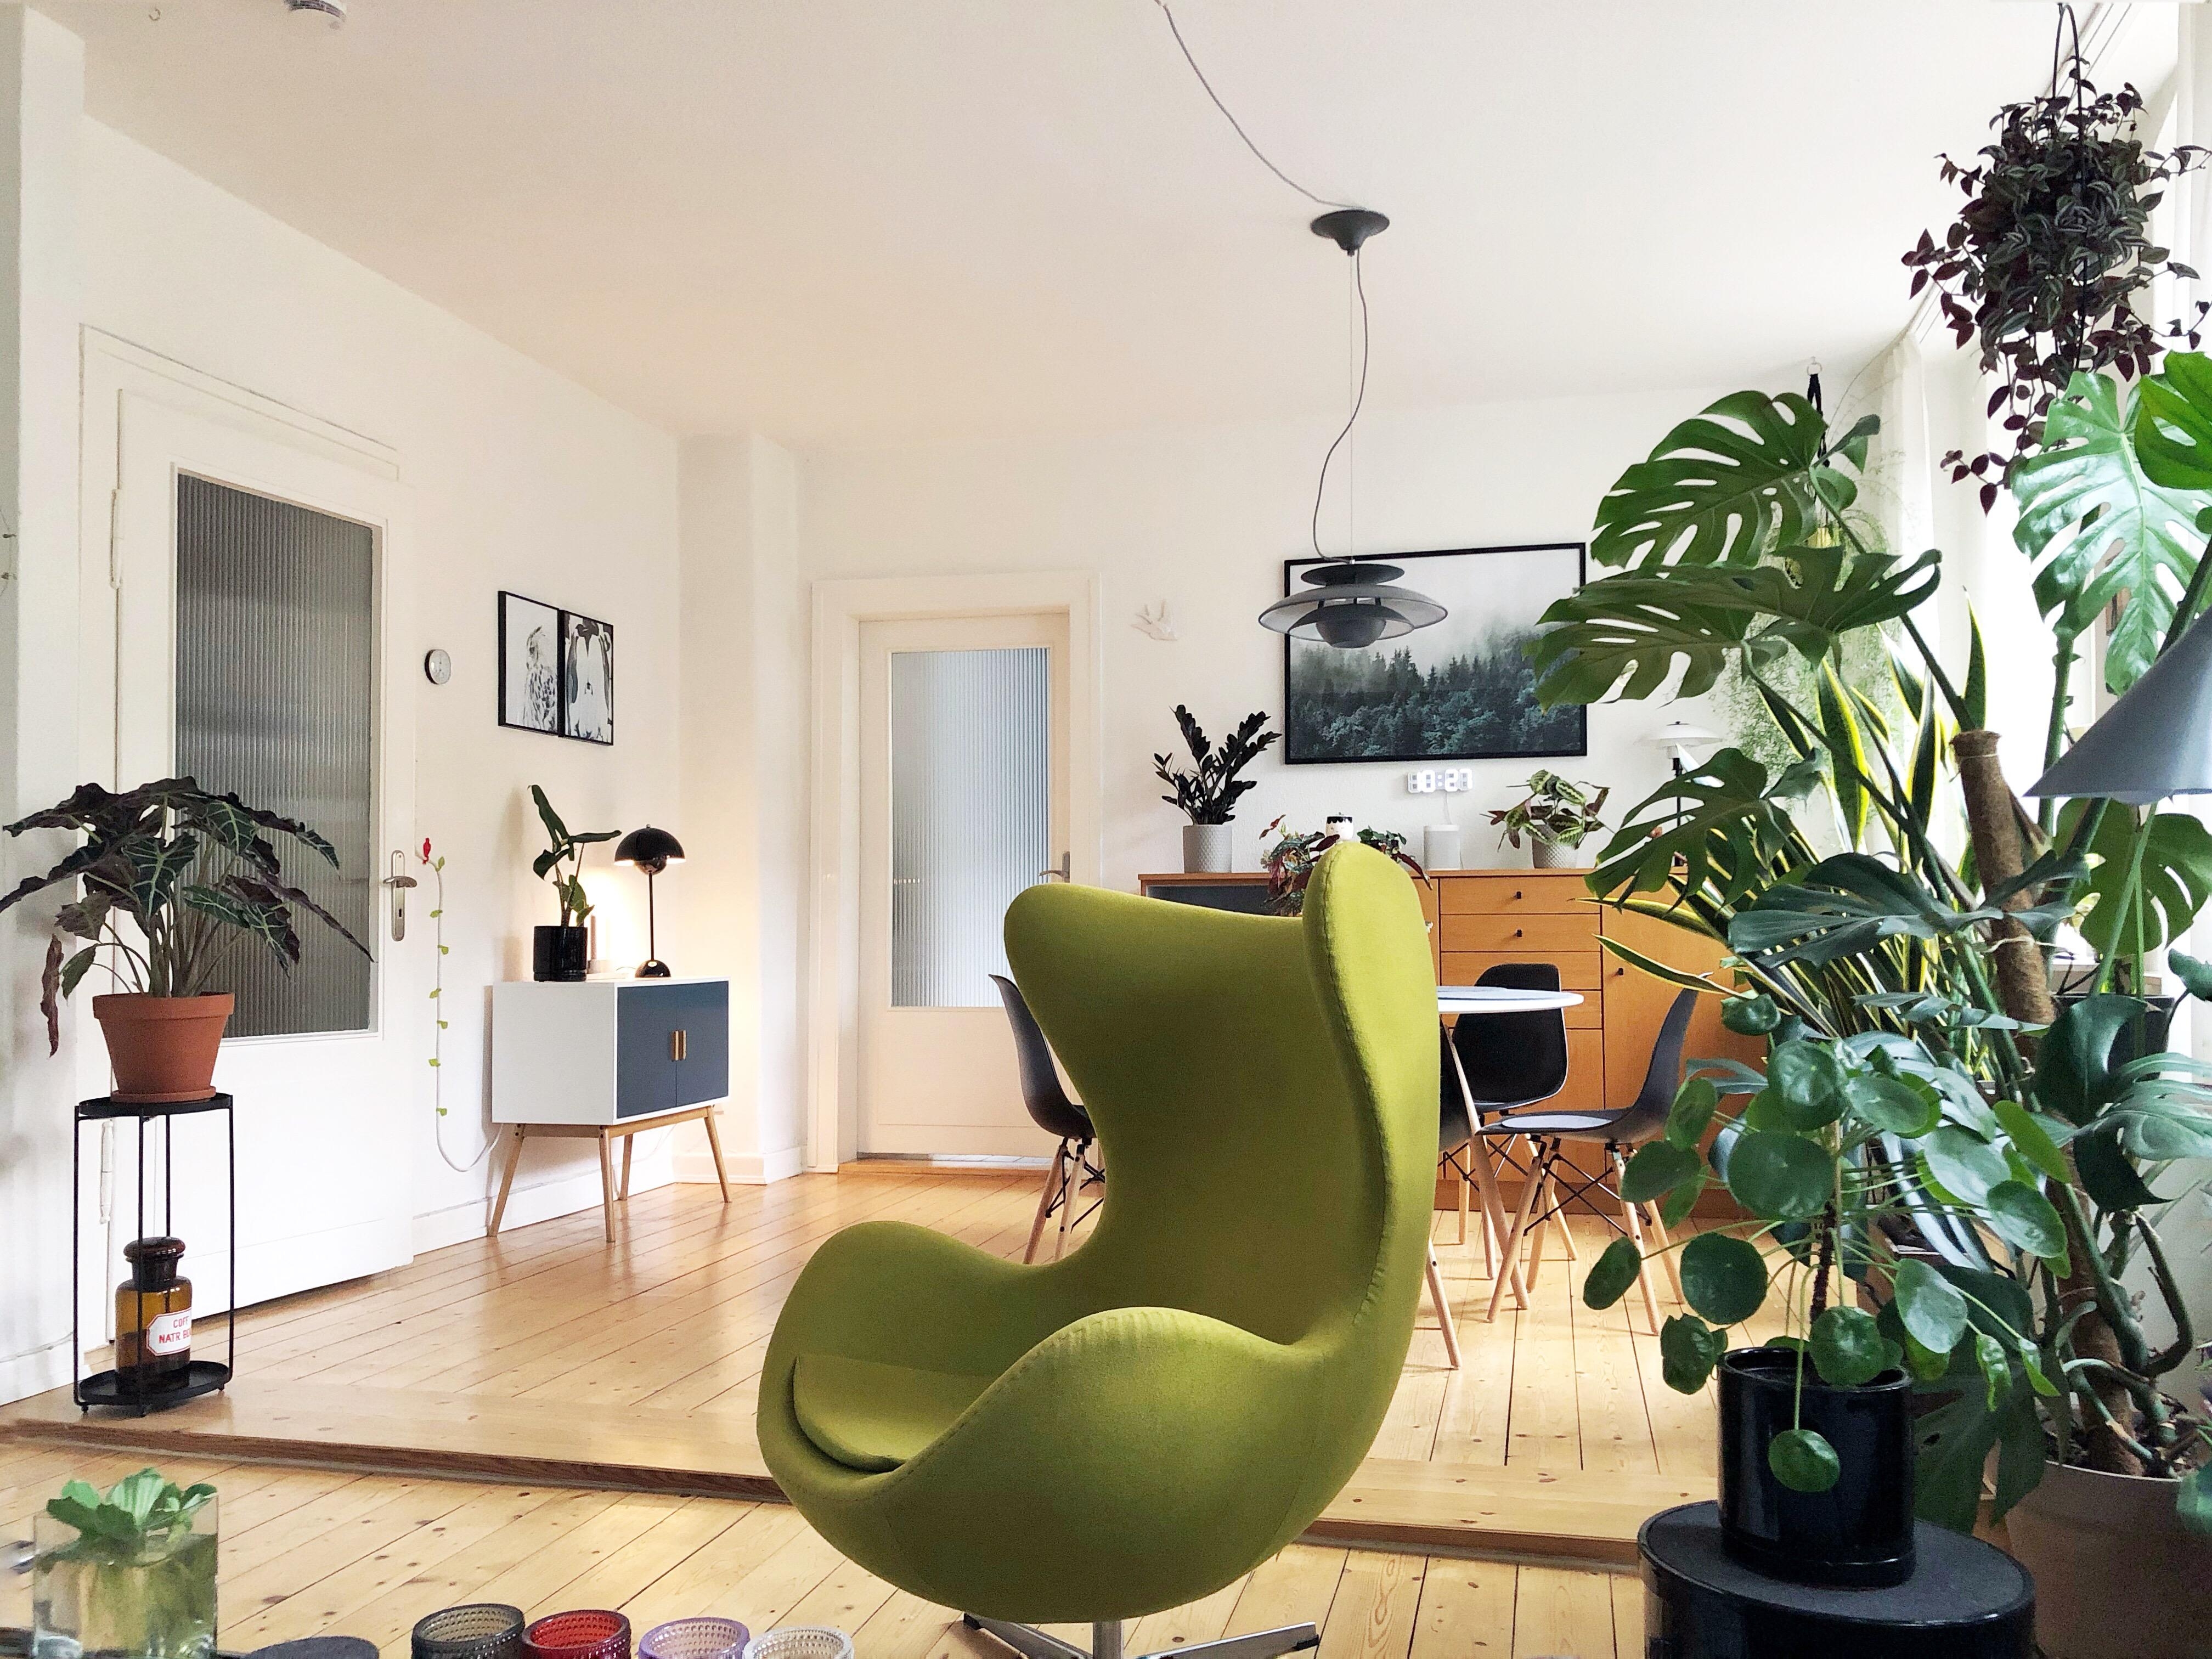 Heute ist es grau in grau, da hilft nur ein grünes Zuhause # couchstyle #homesweethome #grüngegengrau #plantlover